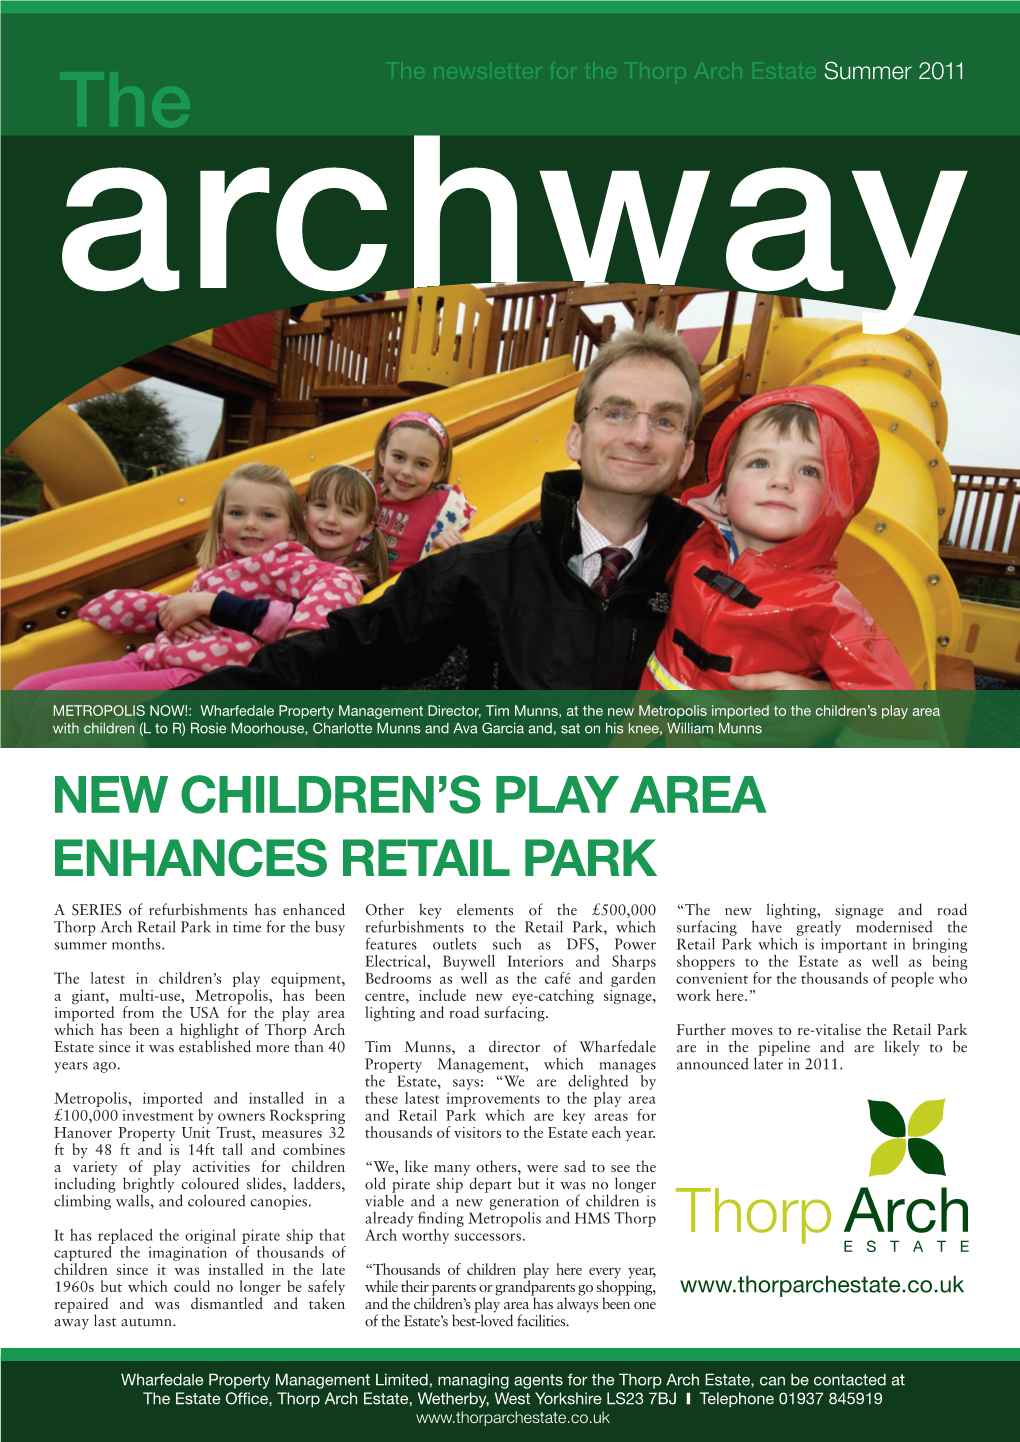 New Children's Play Area Enhances Retail Park